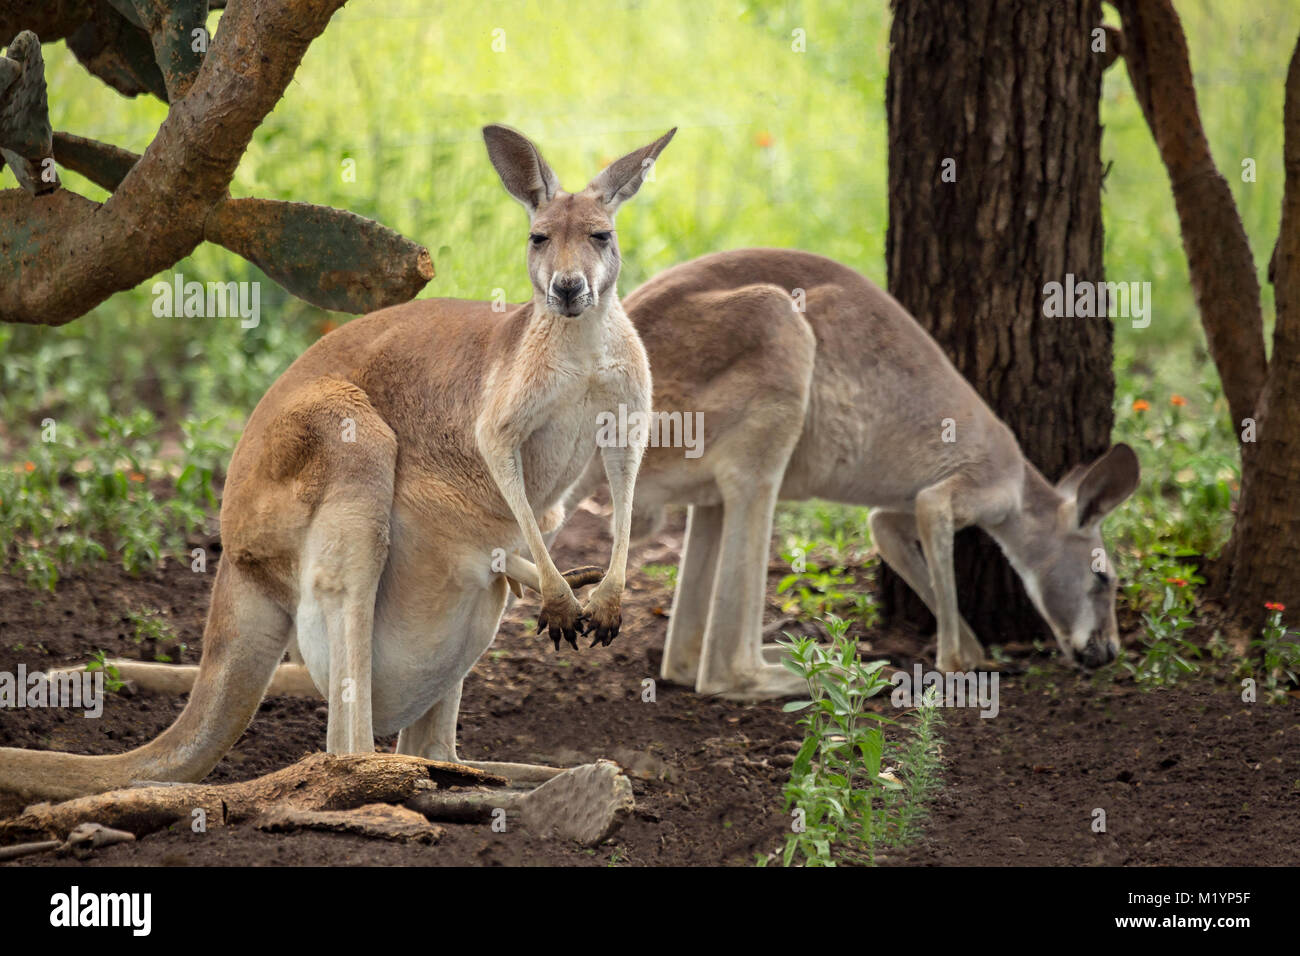 Ein Känguru mit schwarzen und weißen Markierungen auf seinem Gesicht - die Marke der rote Känguru (Macropus rufus). Die zwei kängurus sind im Schatten Stockfoto